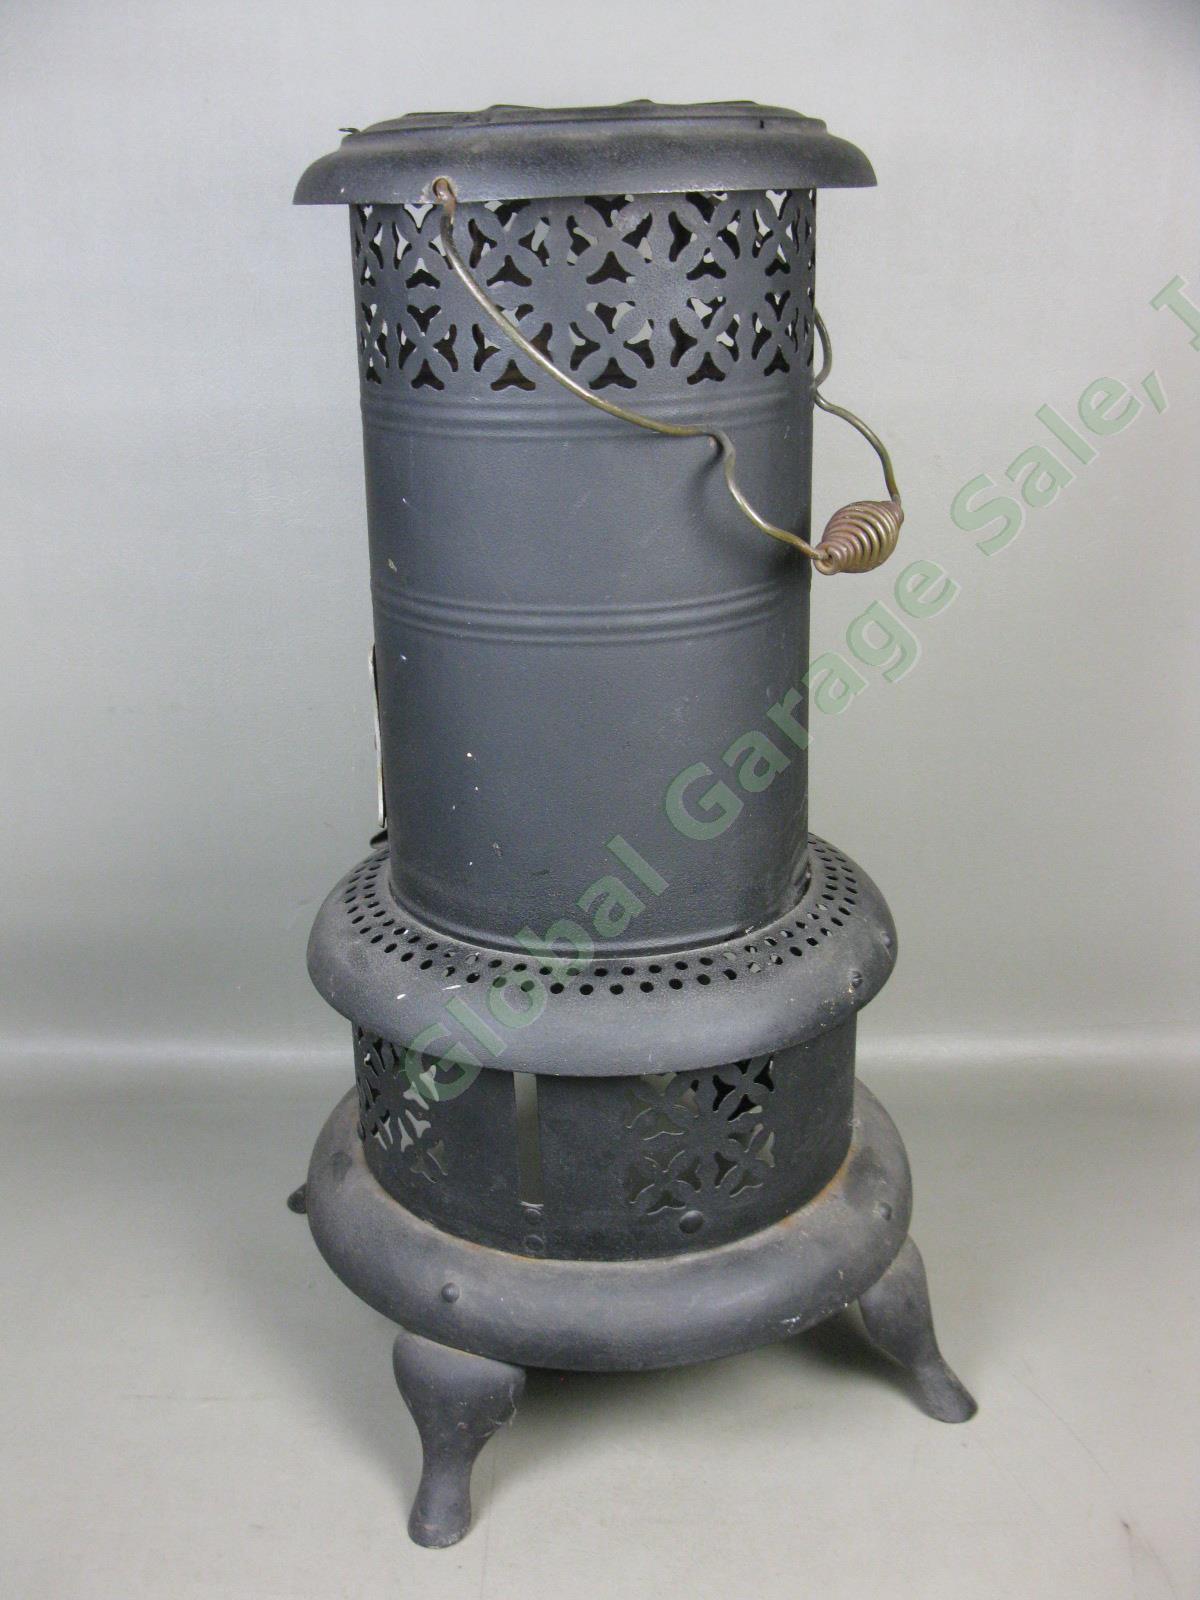 Vtg Antique Perfection Model Smokeless Kerosene Oil Heater Cabin Parlor Stove NR 3